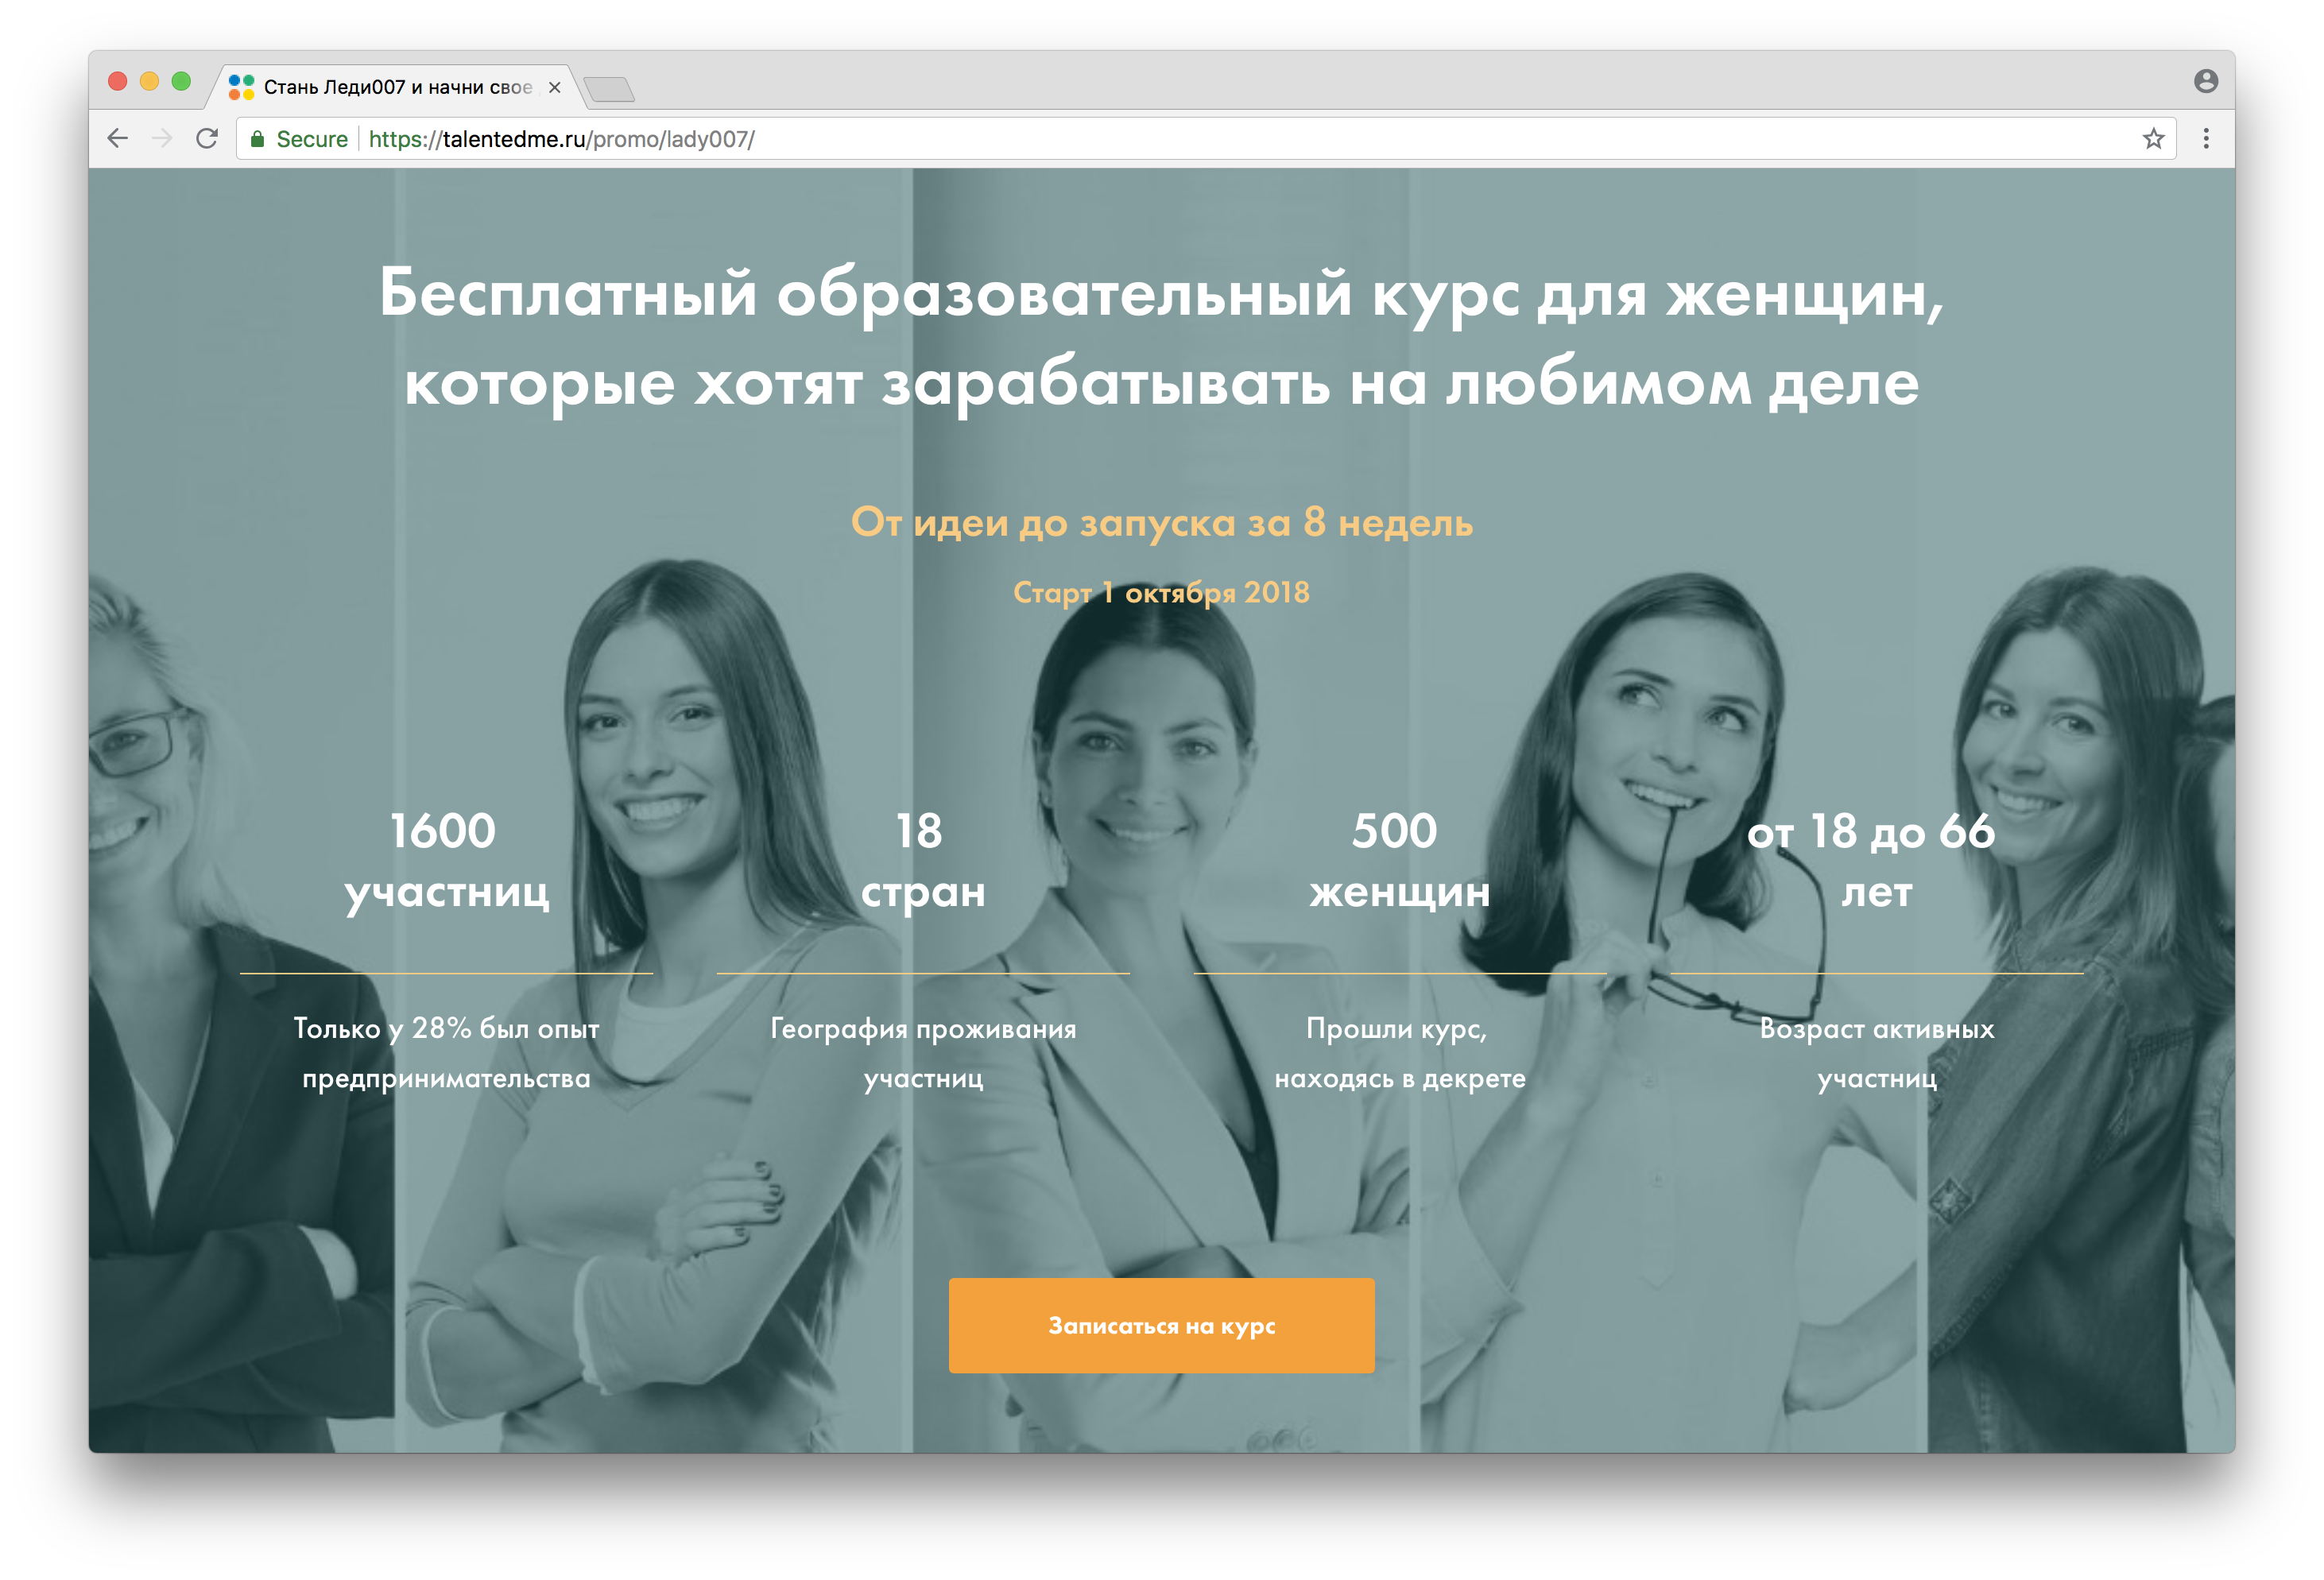 6 женщин, изменивших представление о российском онлайн-образовании